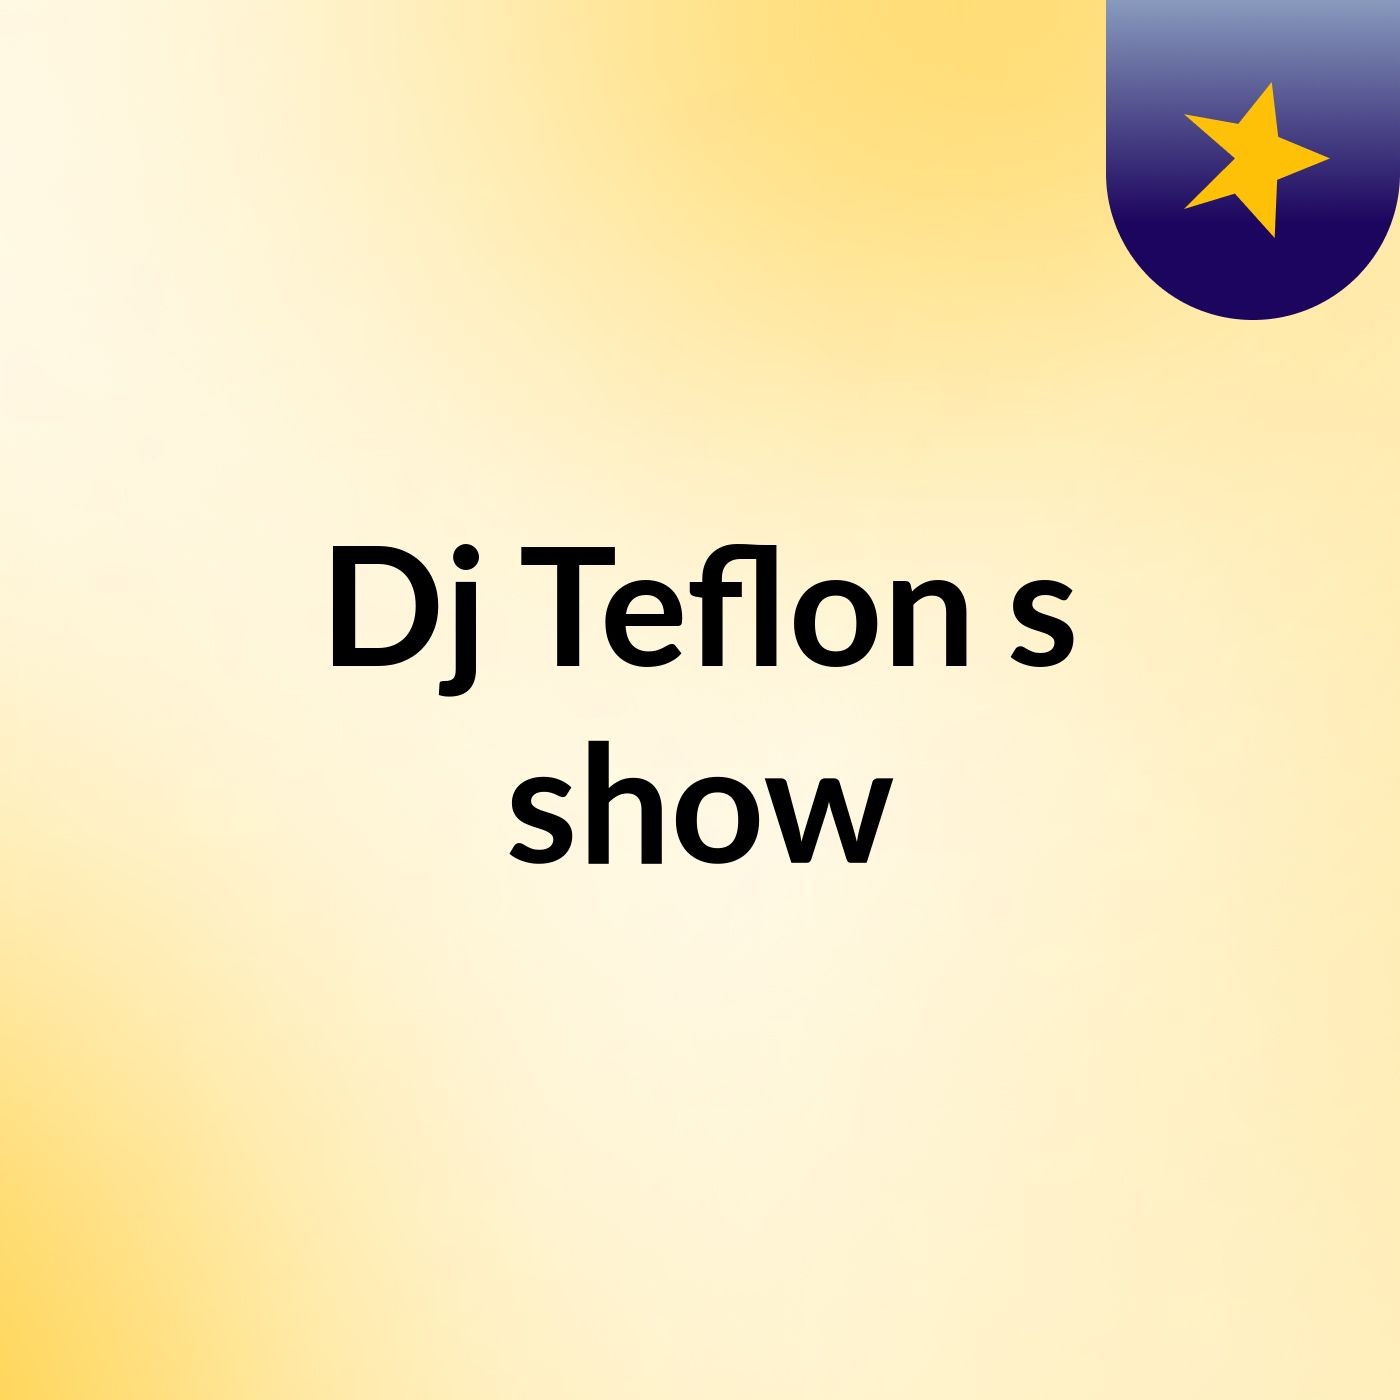 Dj Teflon's show